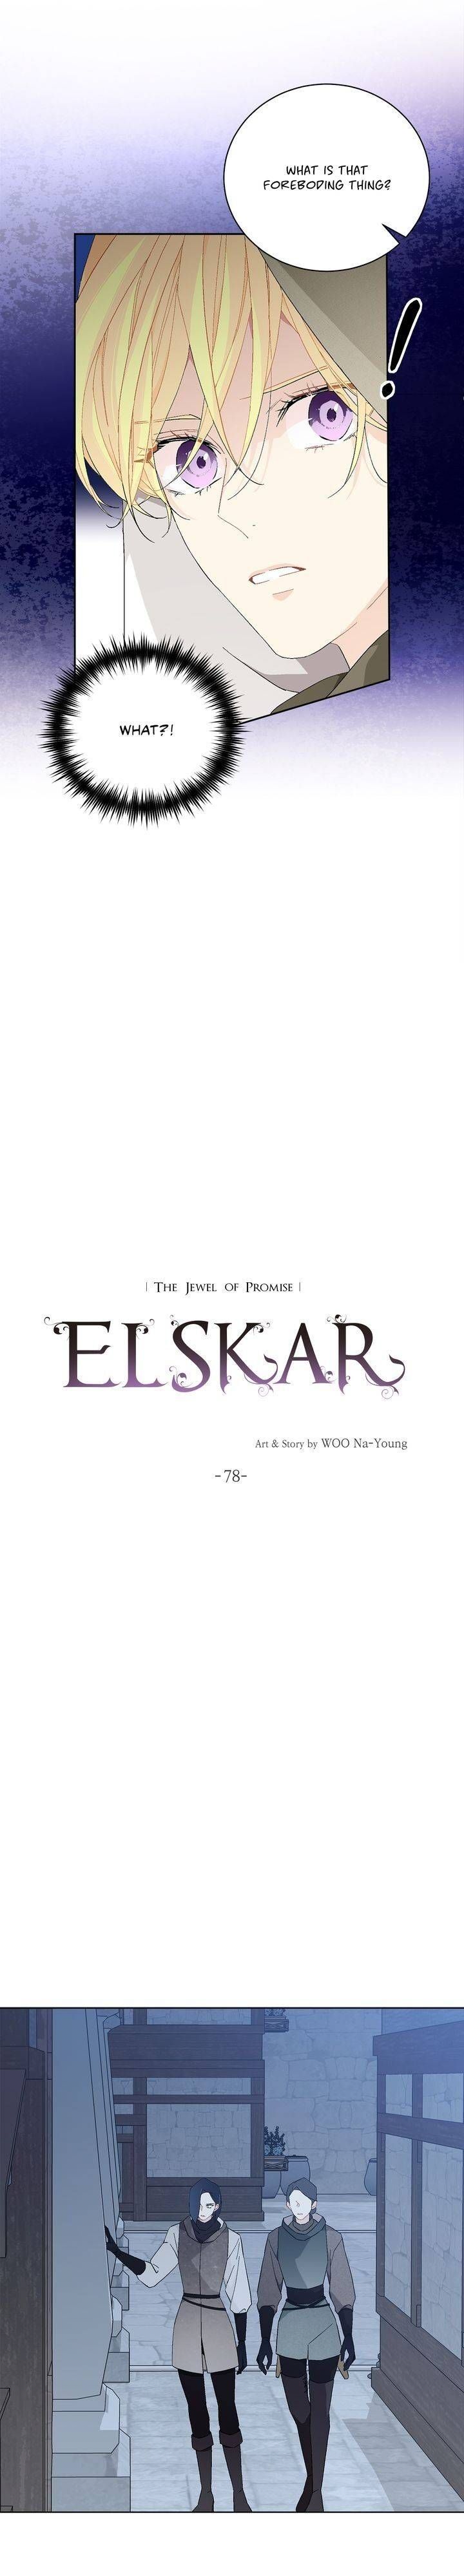 Elskar Chapter 78 page 2